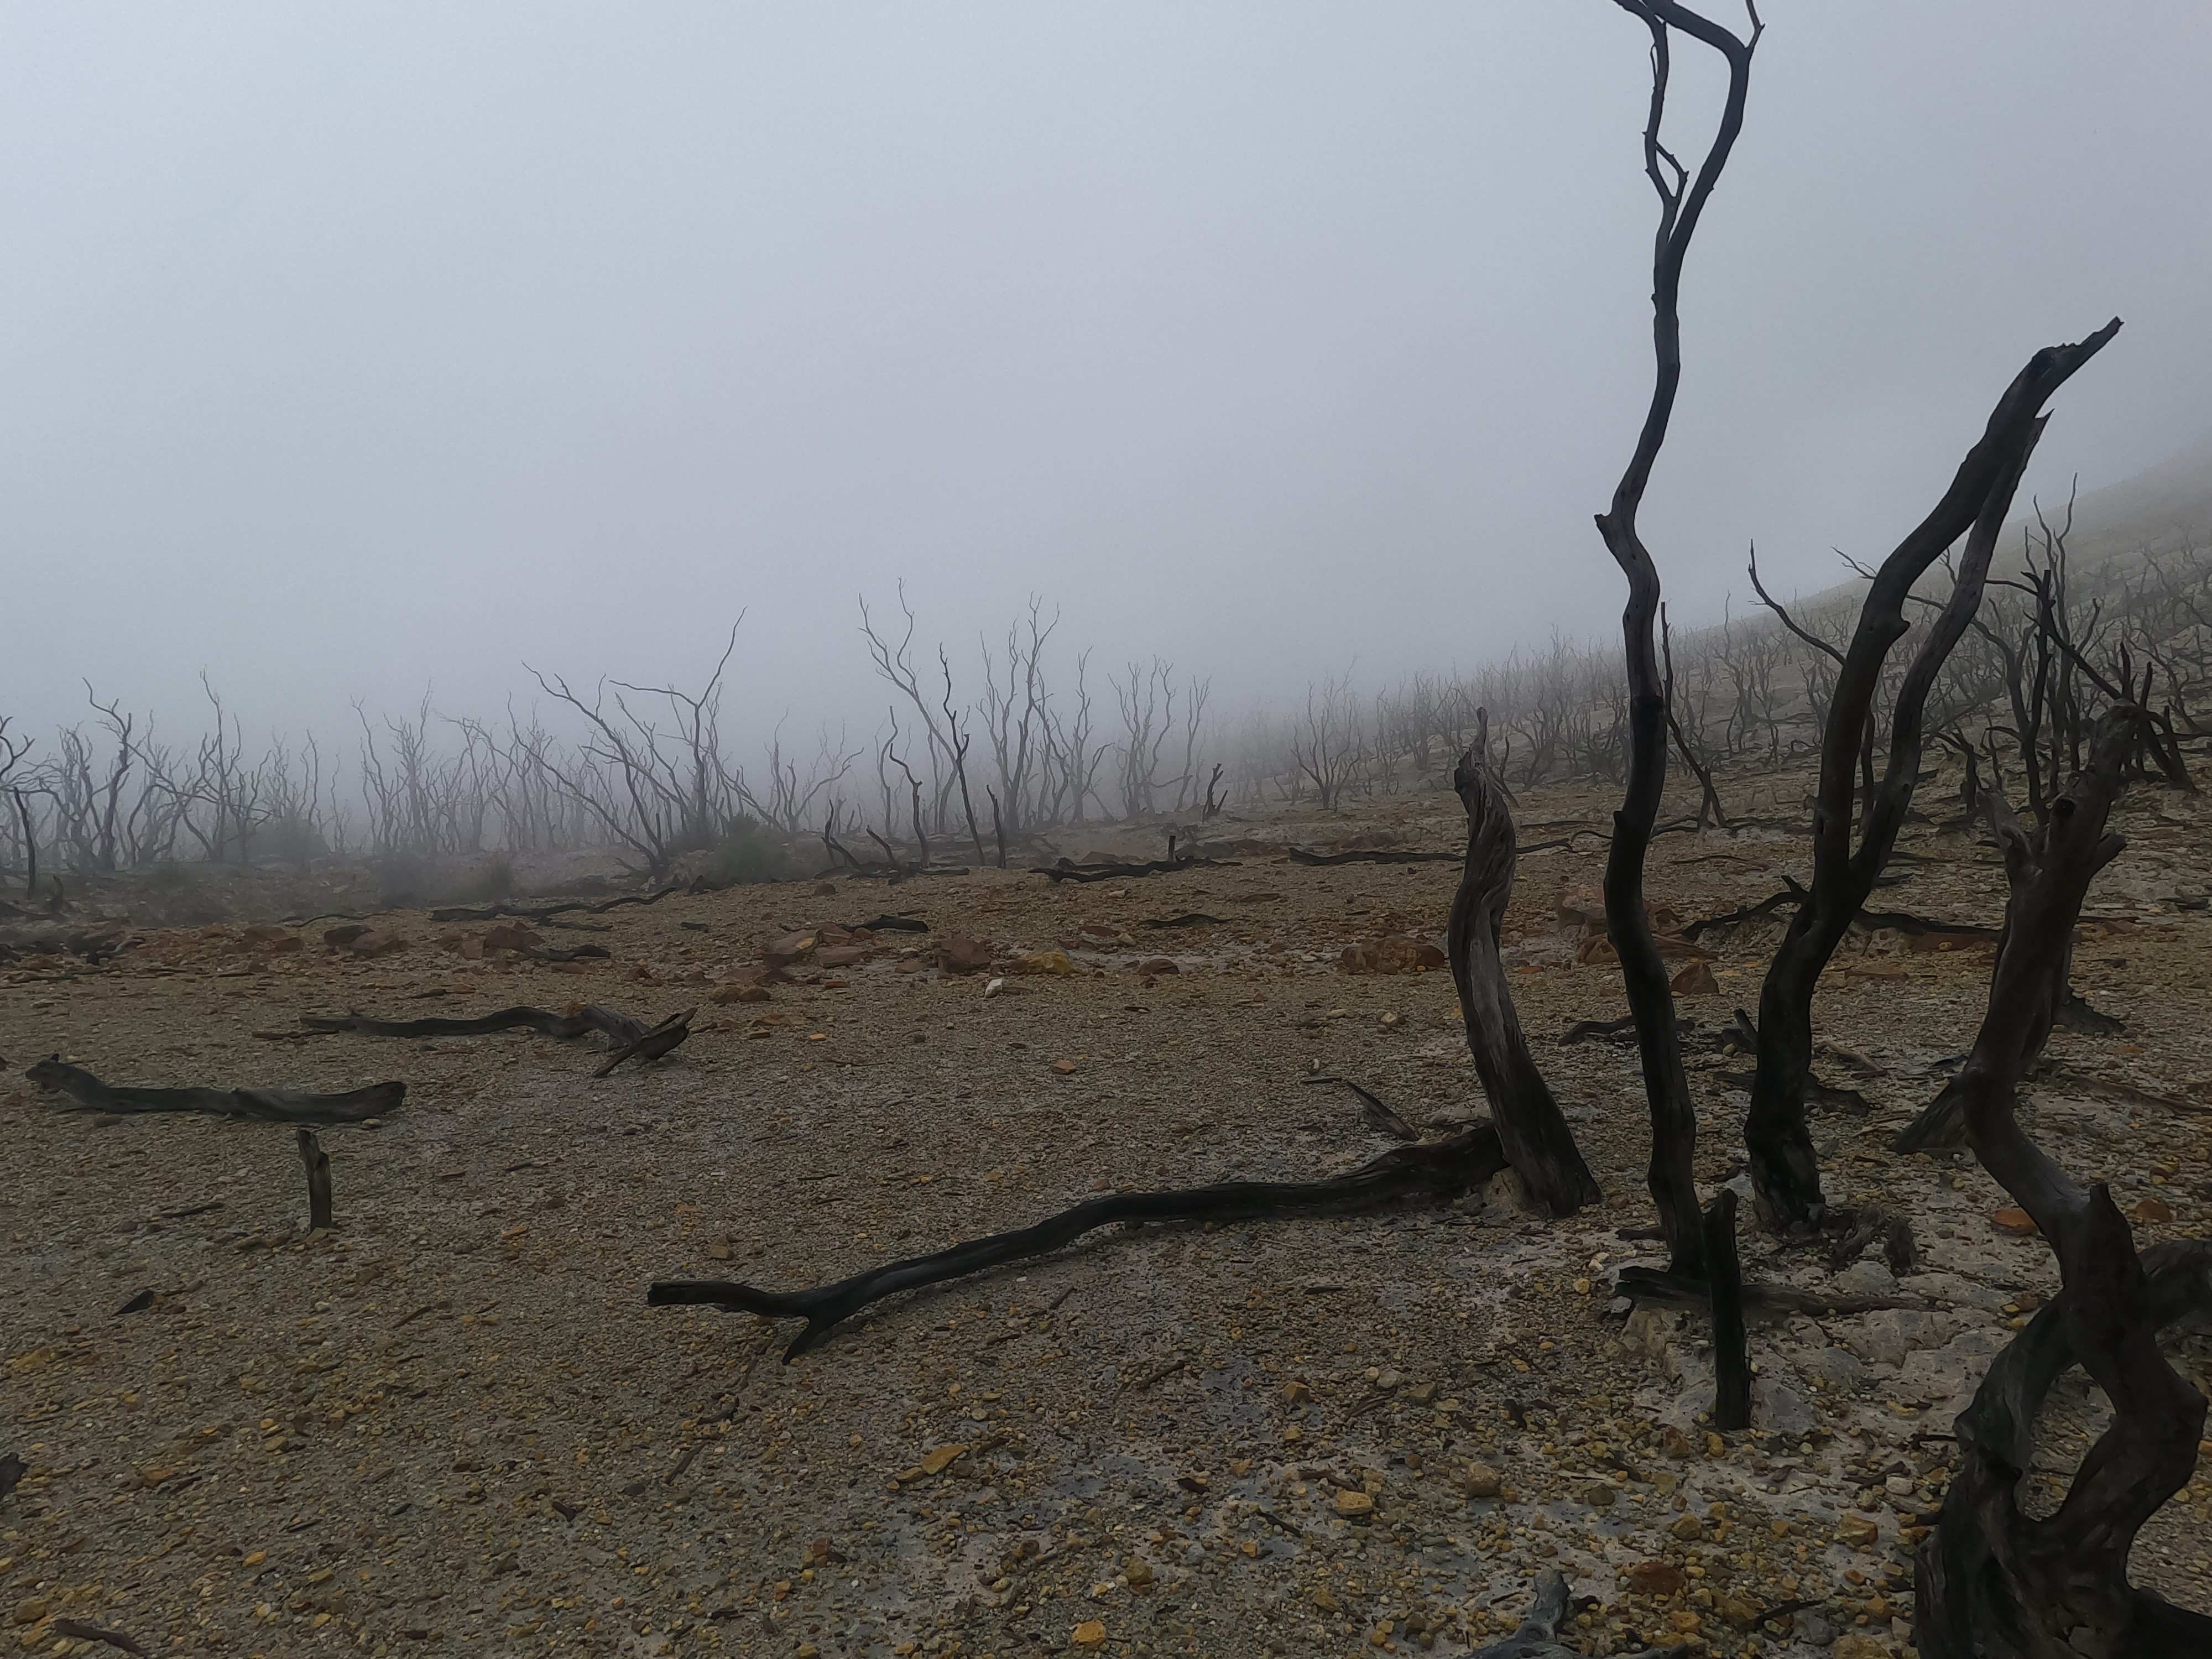 Photo 23: Kondisi hutan mati sekitar pukul 2 siang, kabut sudah turun dan jarak pandang sekitar 50 meter saja.